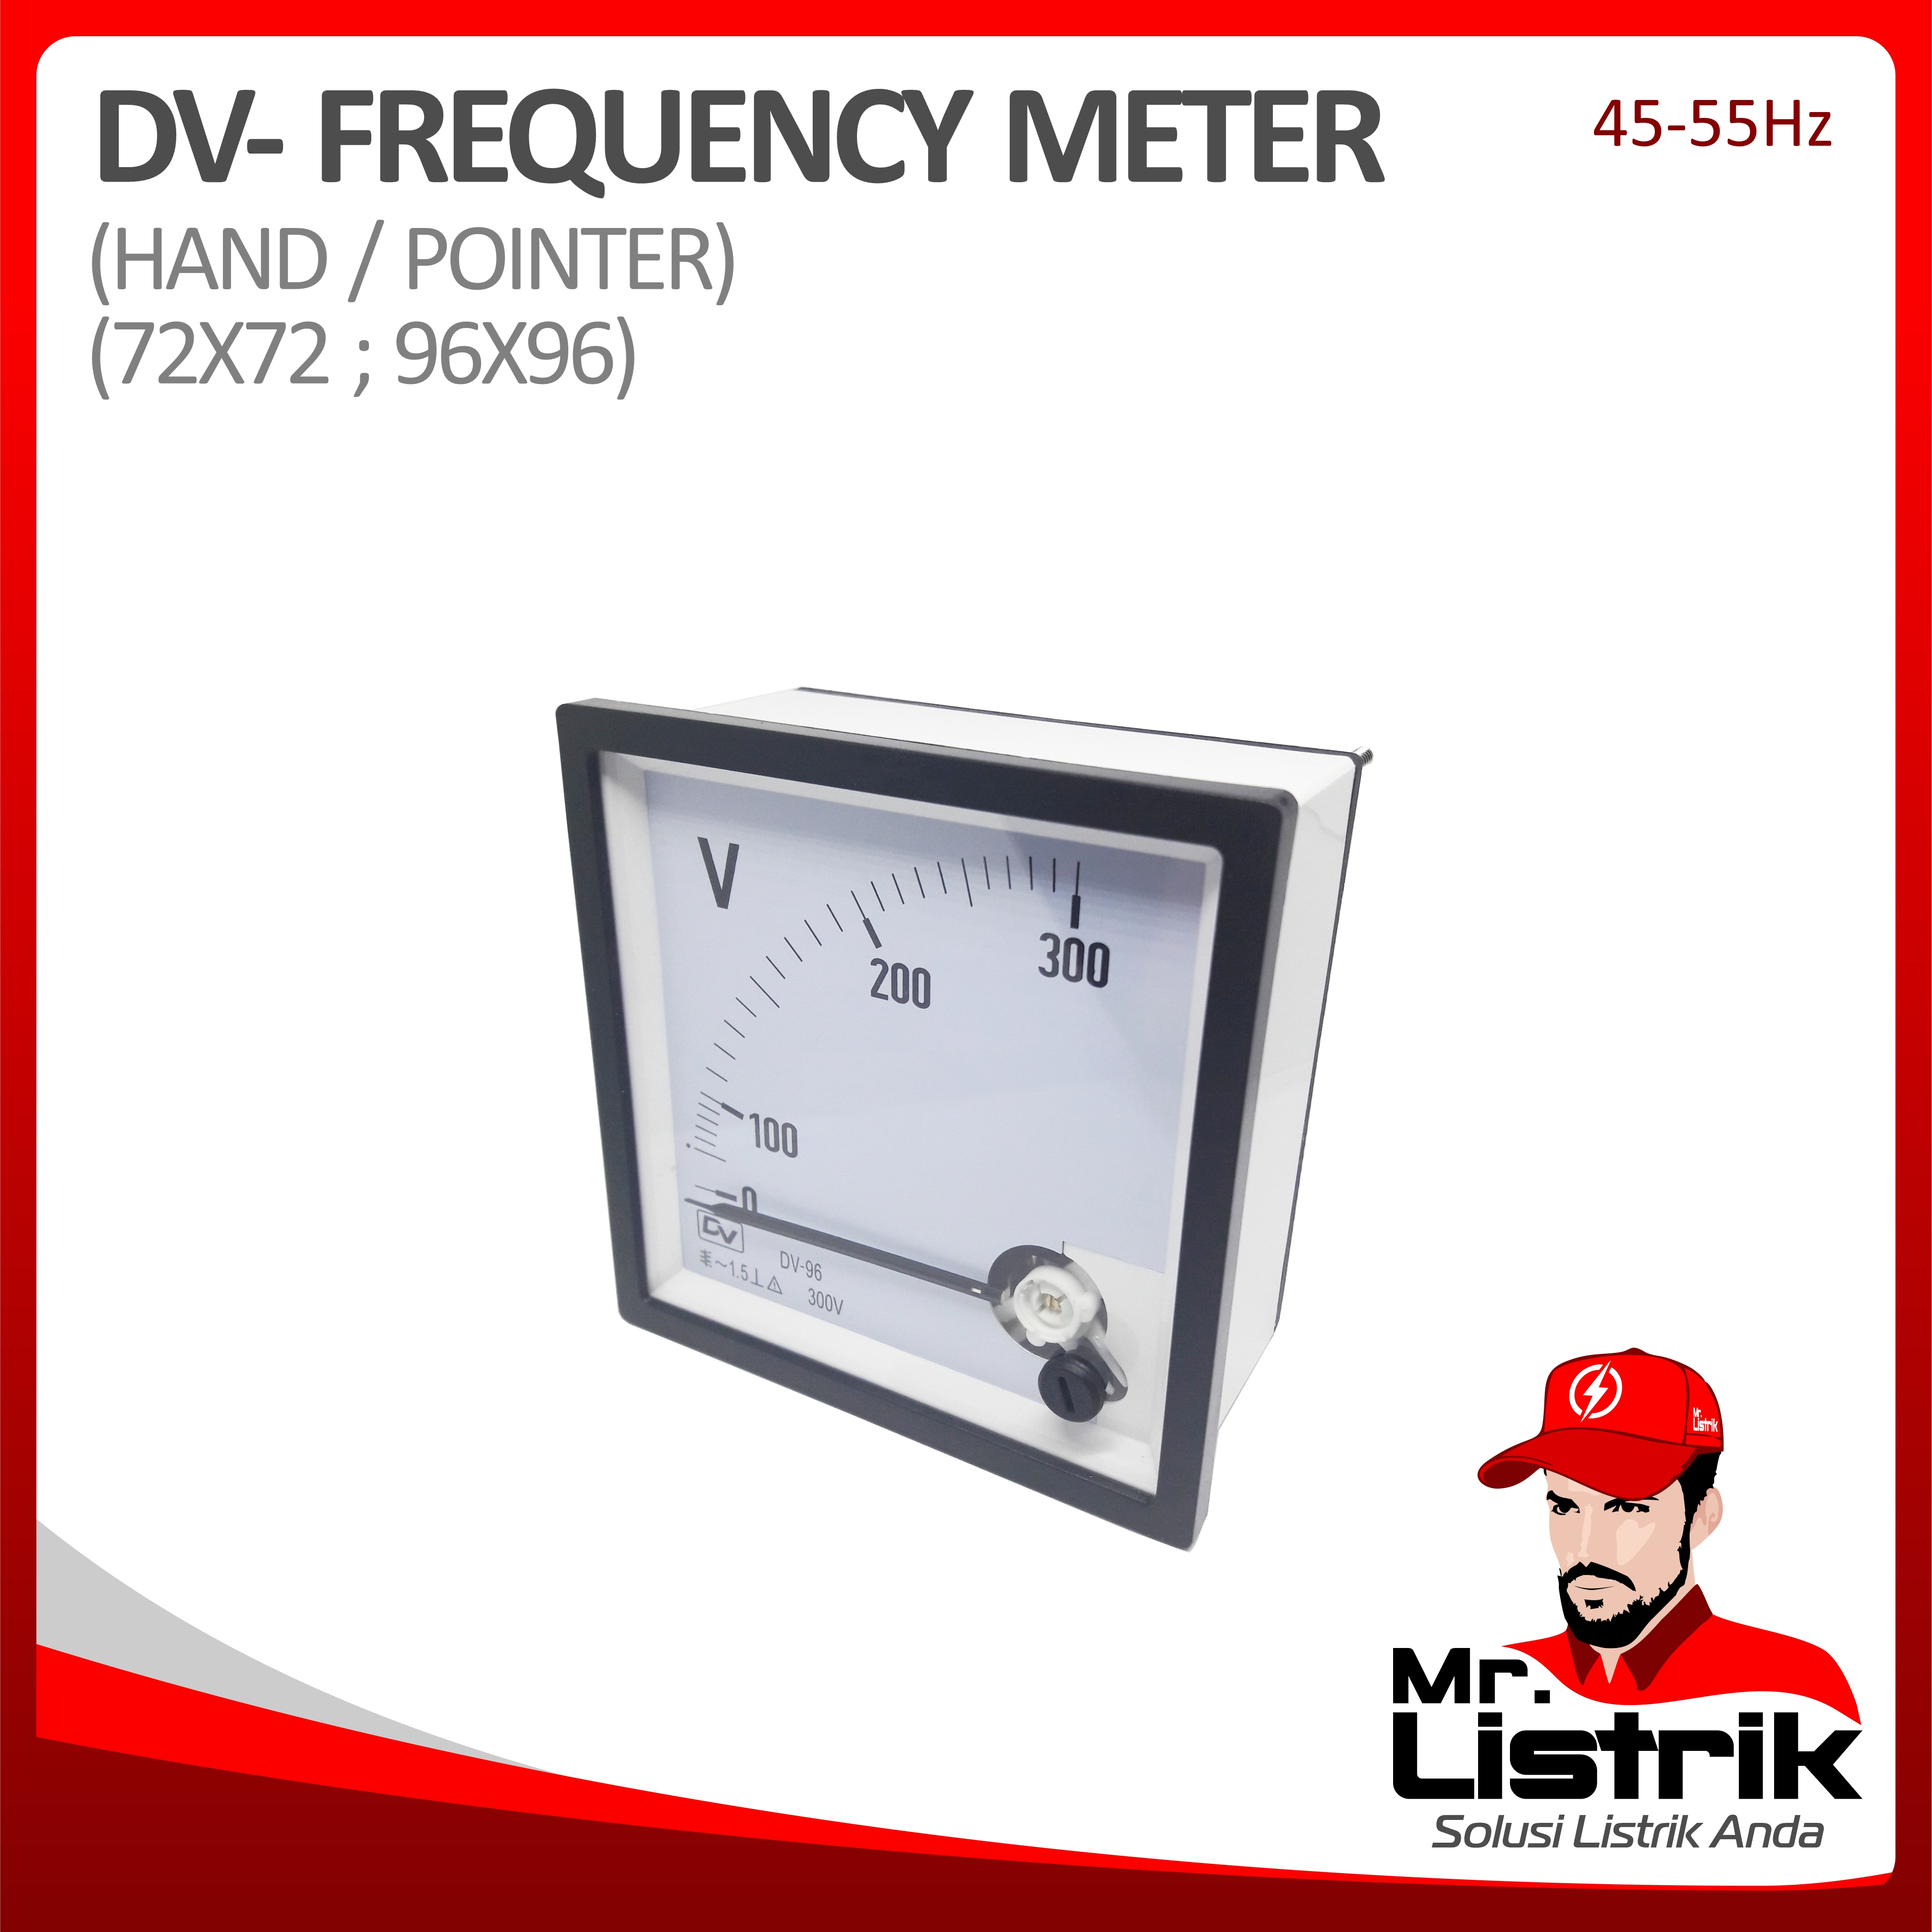 Frequency Meter Hand/Pointer DV 72x72 45-55Hz